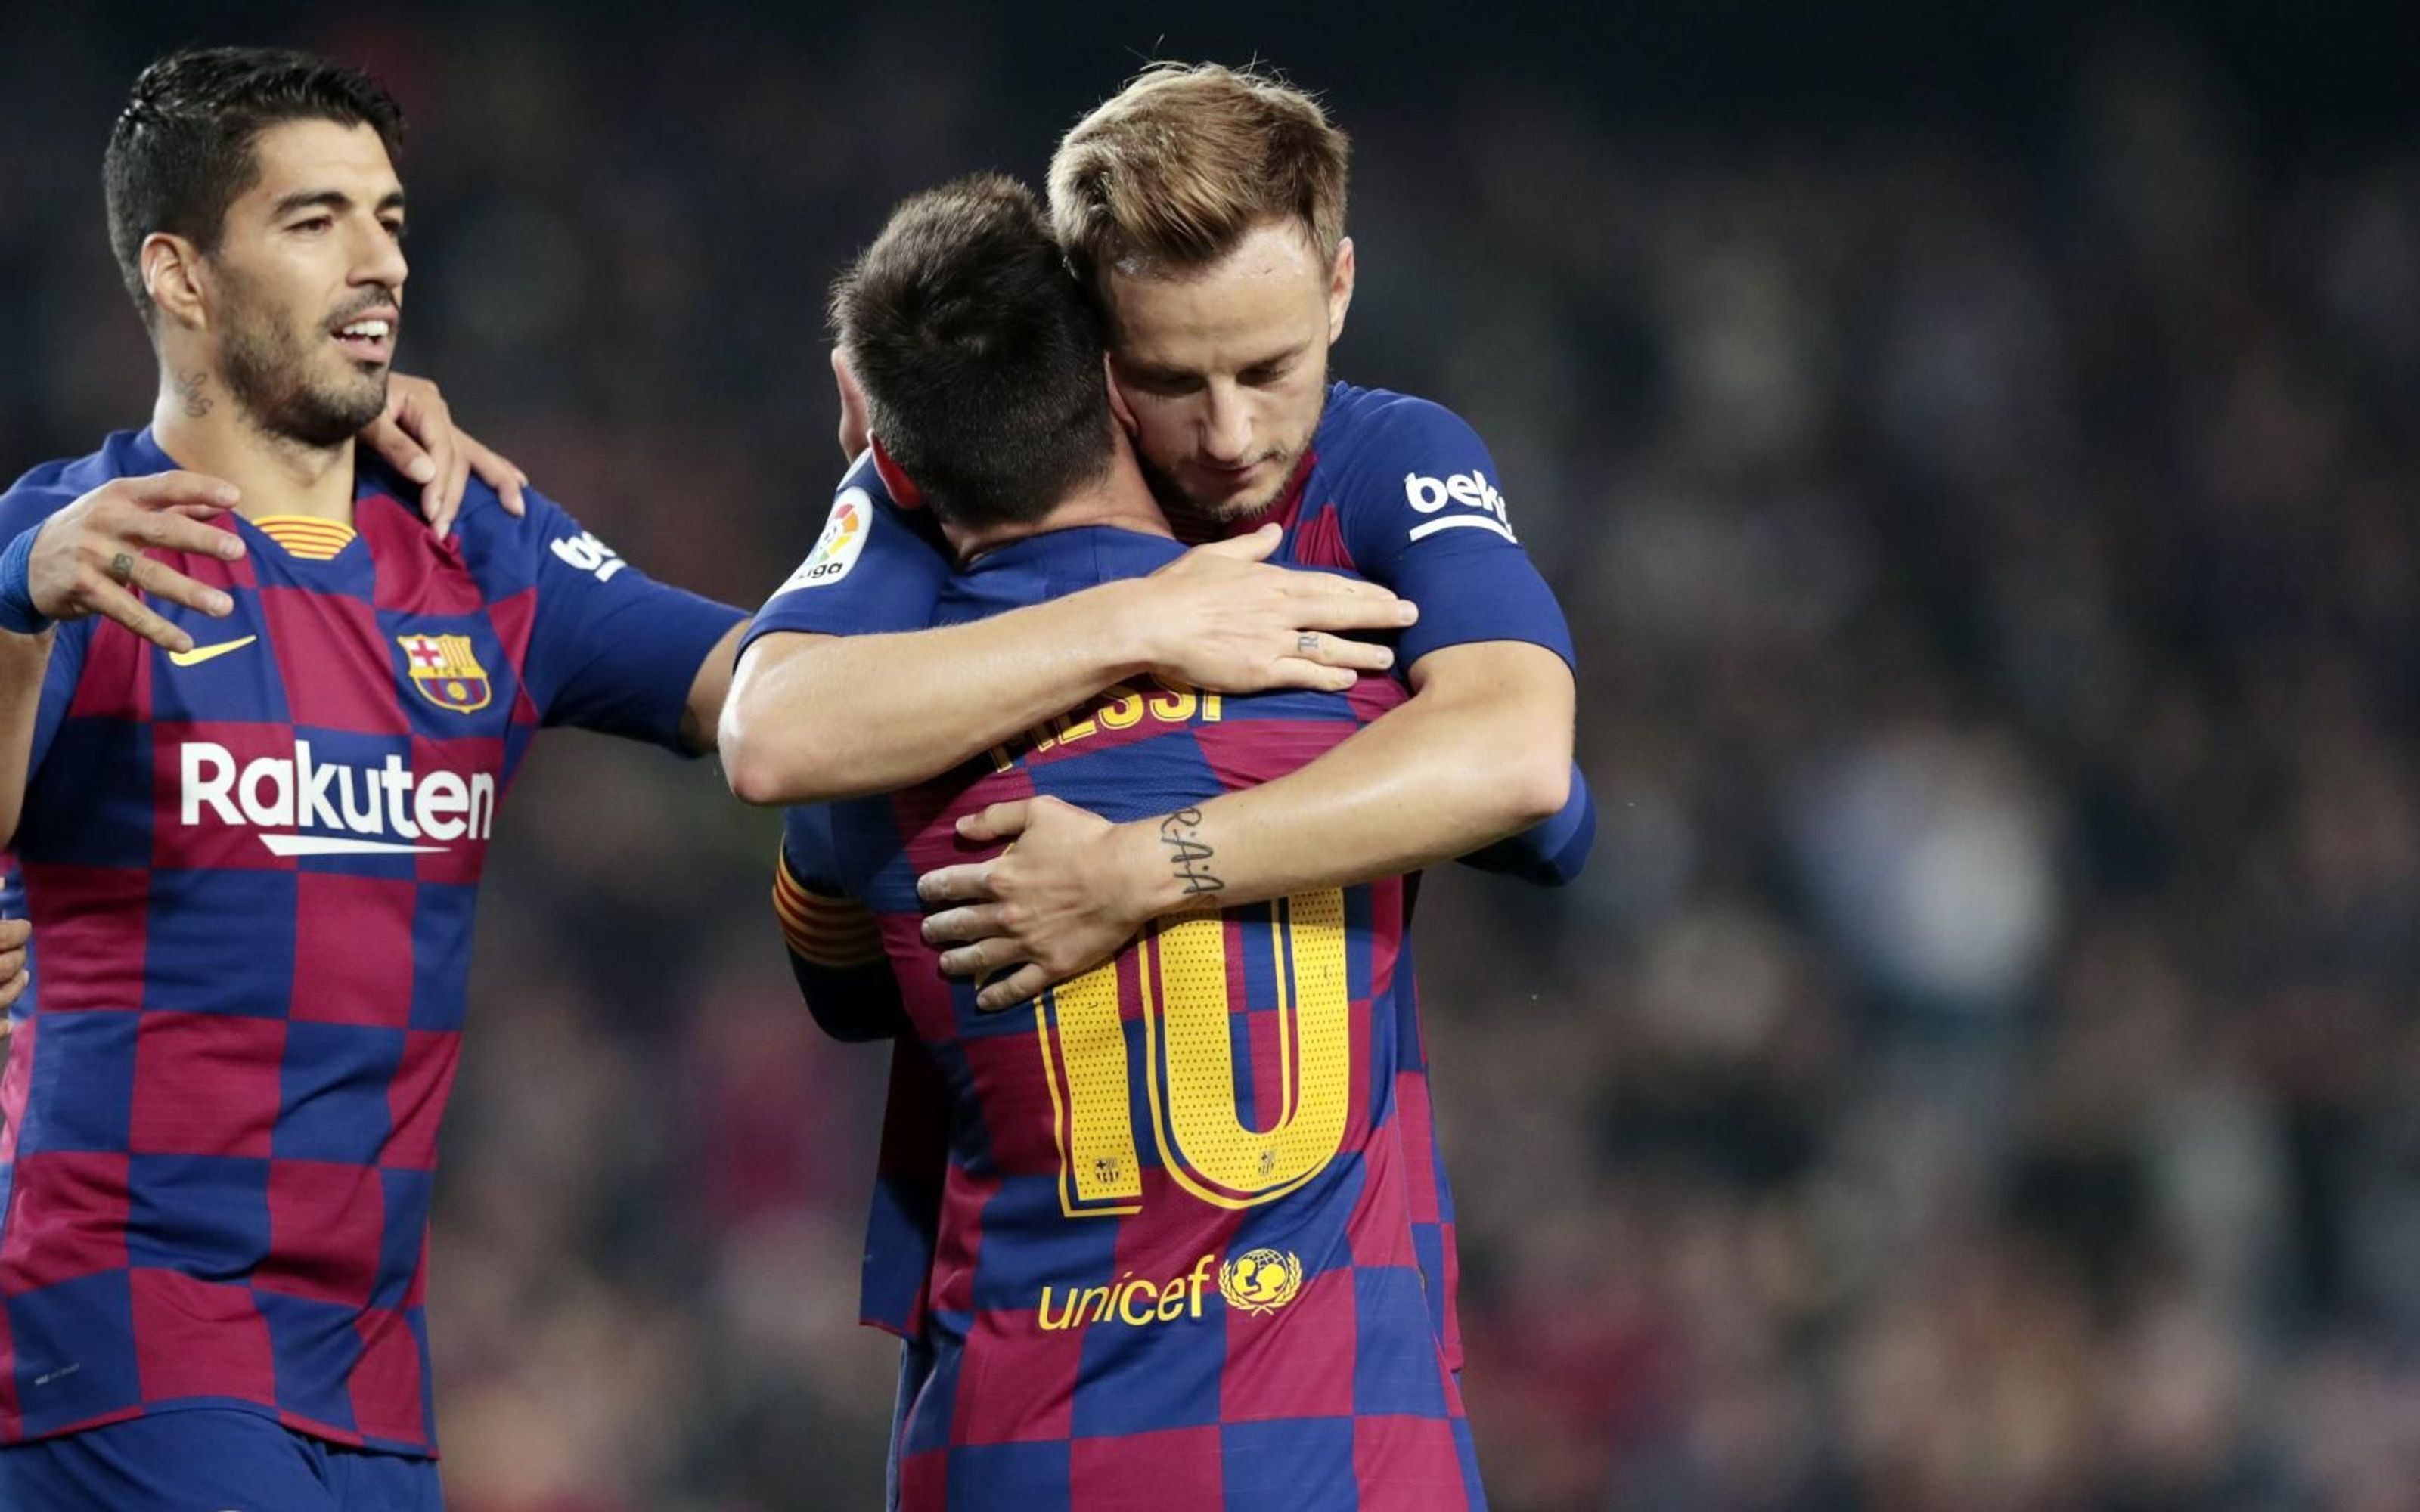 Messi y Rakitic fundiéndose en un abrazo tras el gol del argentino / FC Barcelona